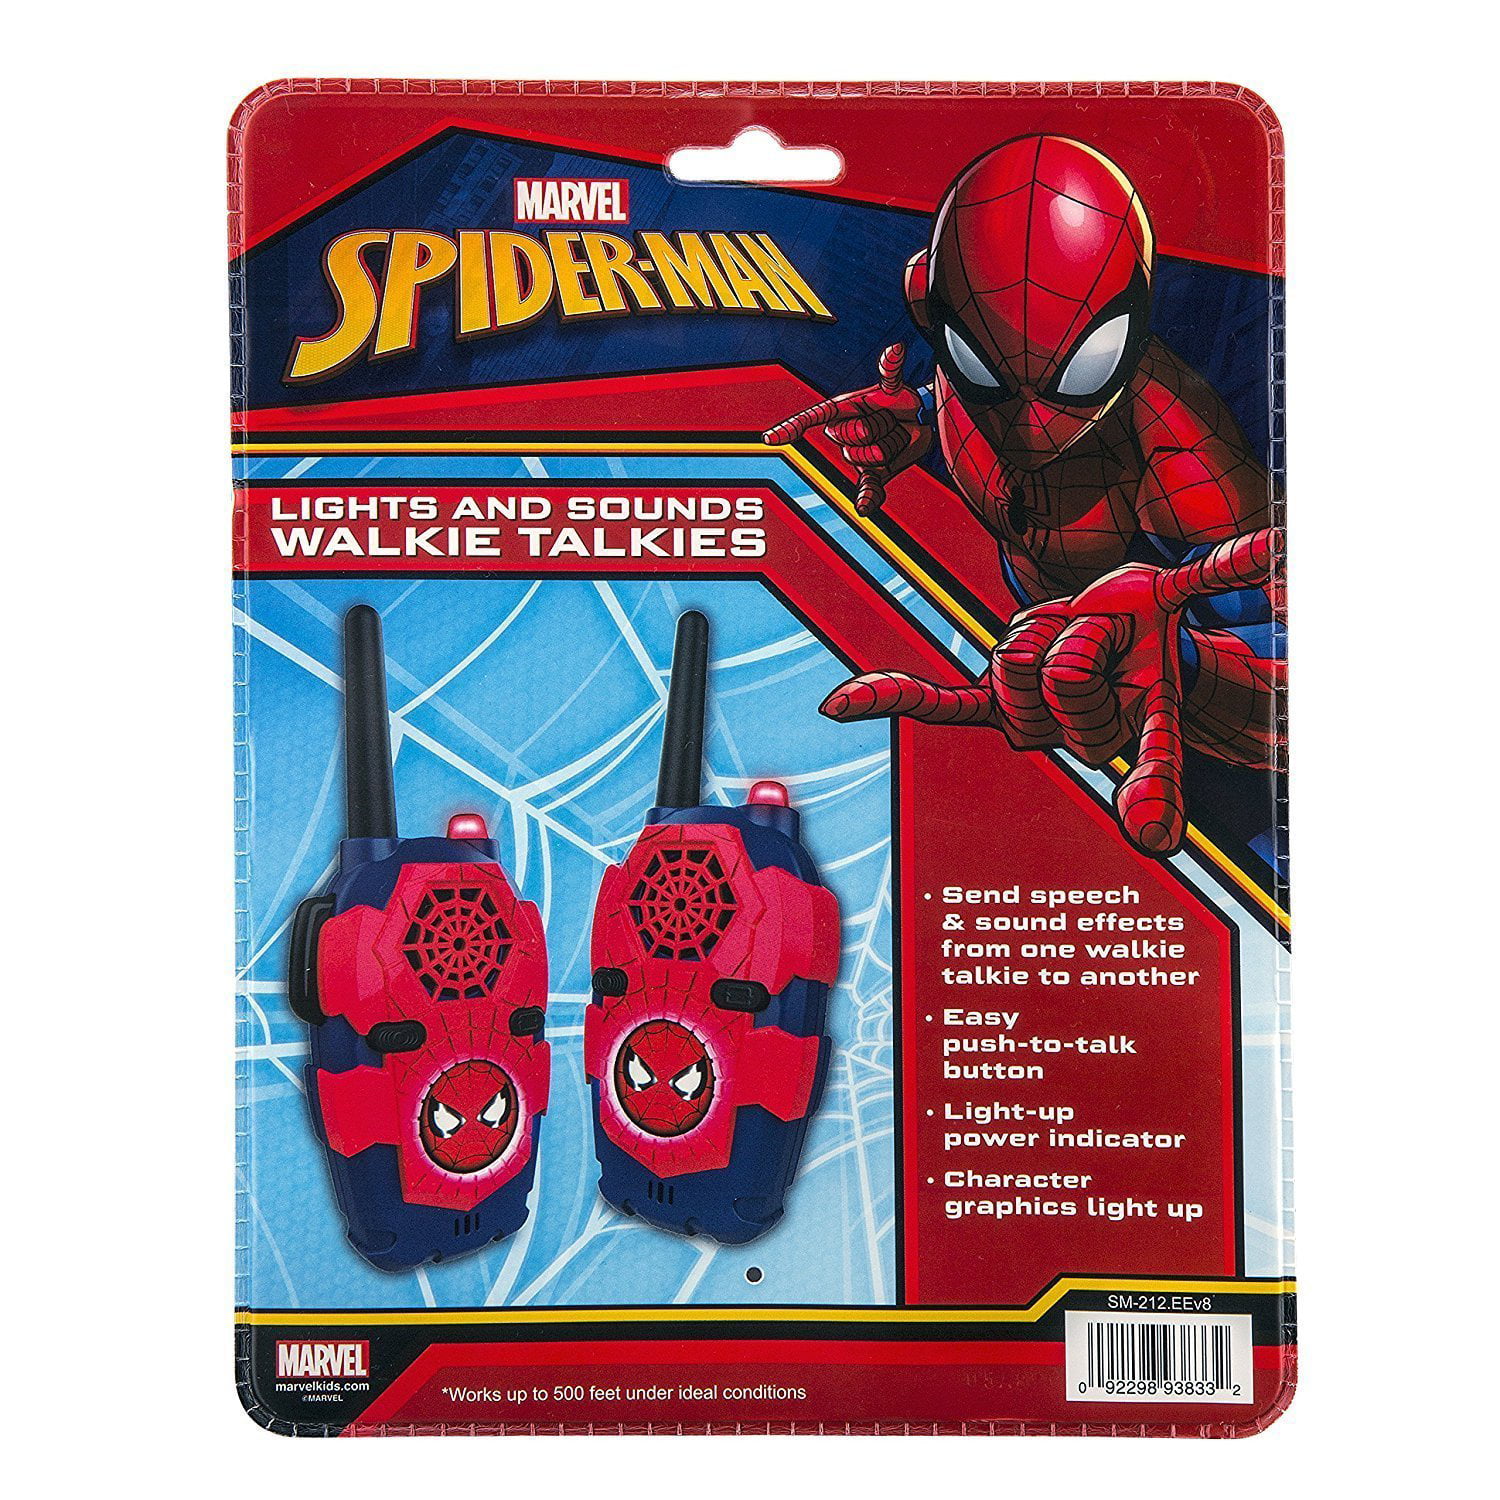 Spiderman walkie talkies pour Enfants Convivial 2 Way Longue portée Facile à Utiliser à Boutons avec lumière et Son intégré. 